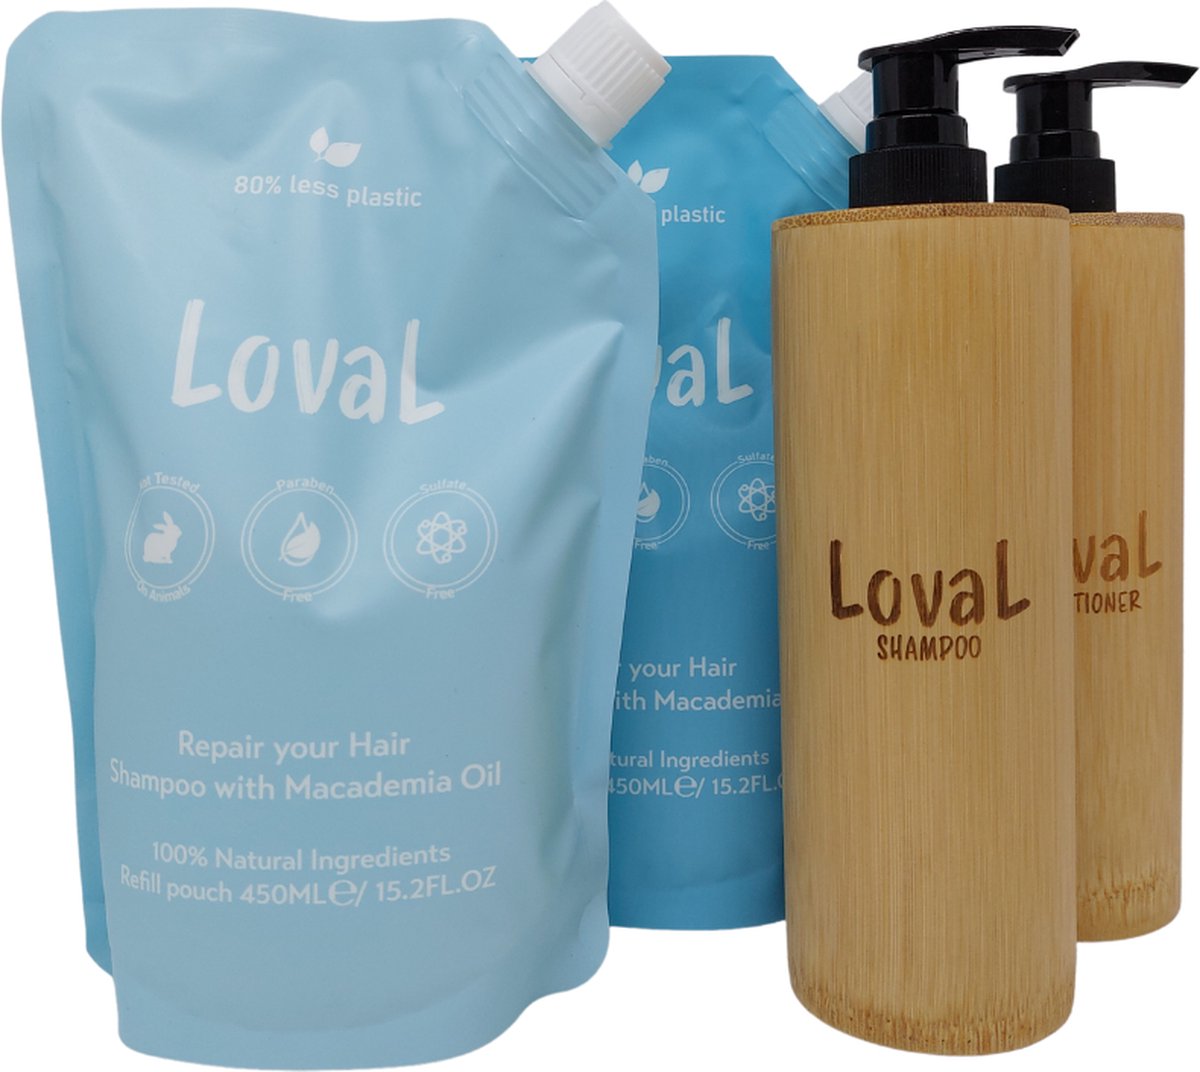 Loval - Geschenkset - Kerst cadeau voor haar / hem - Organische shampoo en conditioner met macadamia olie - 2 Navulzakken 450ML - Zonder sulfaten, parabenen, siliconen en minerale olieën - 2 Hervulbare Bamboe dispensers 200ML